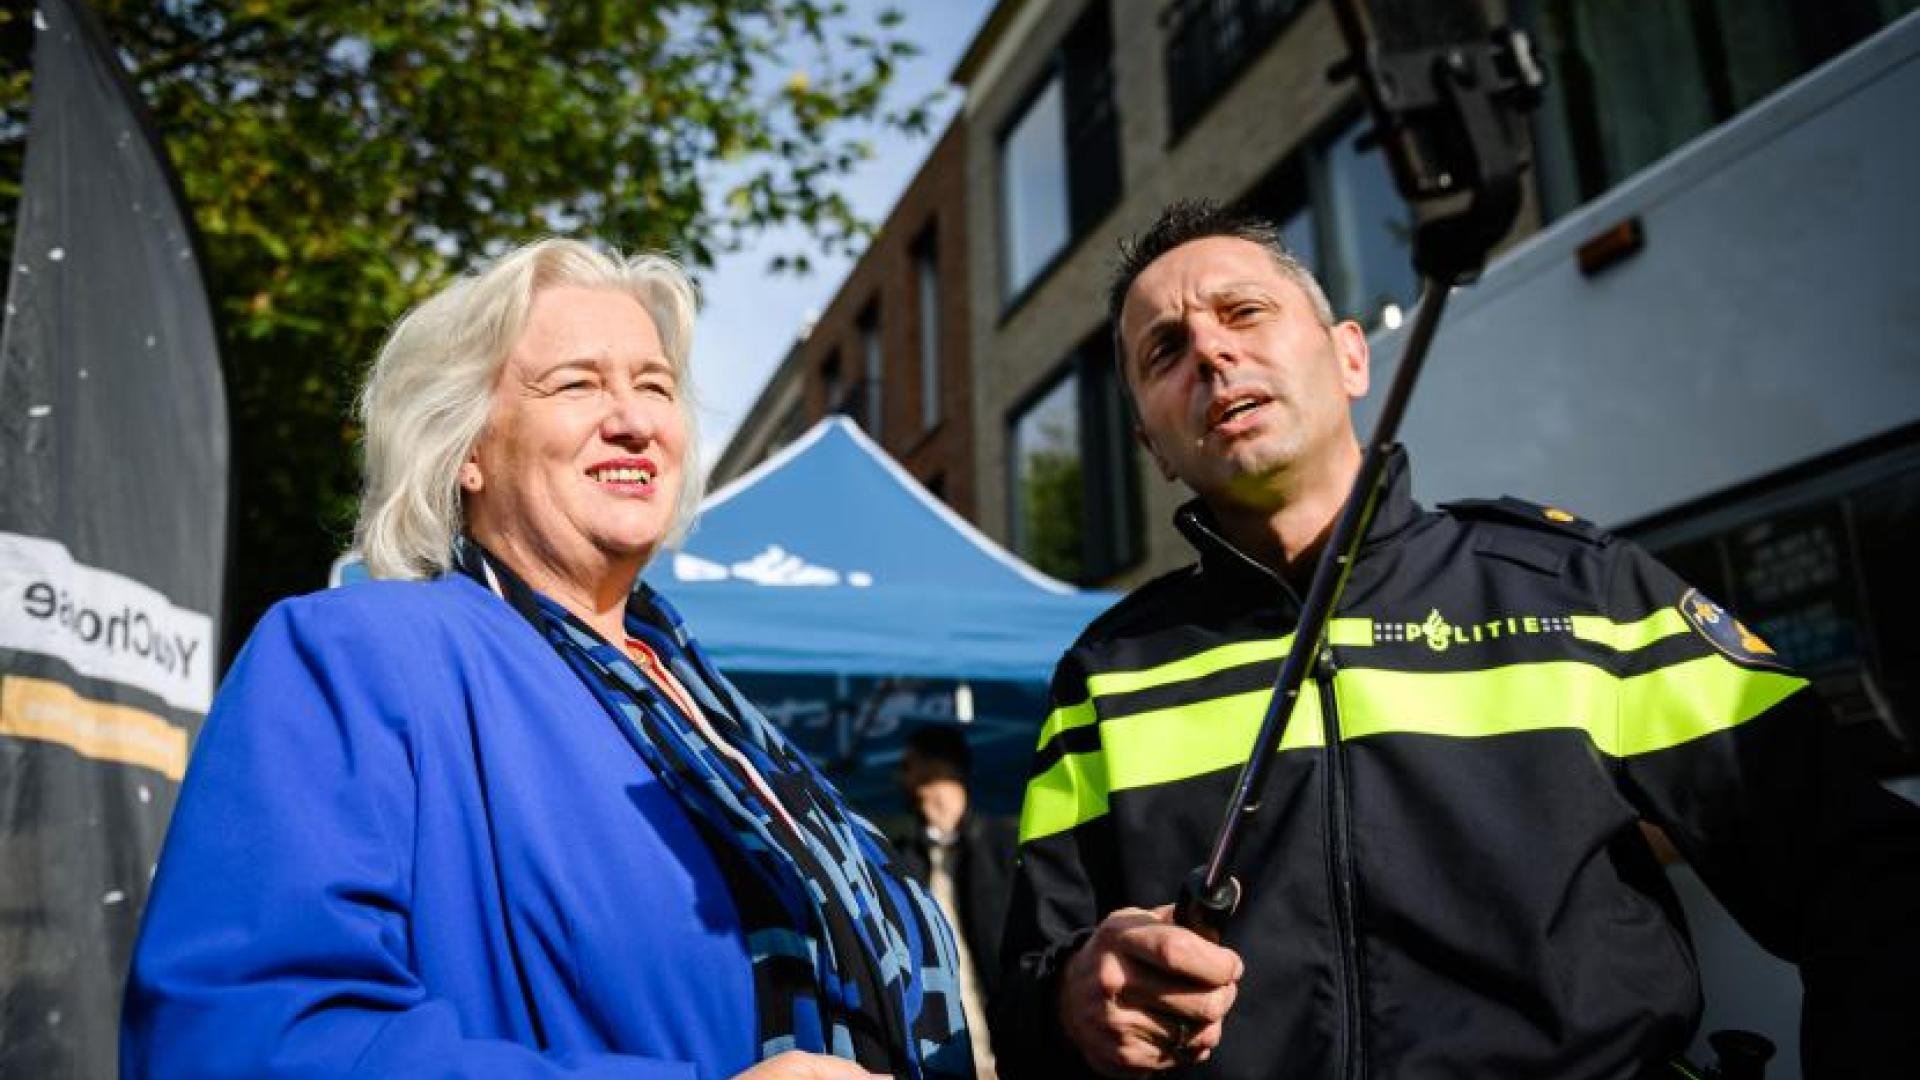 Burgemeester Marianne Schuurmans en een politieagent maken een selfie op straat.